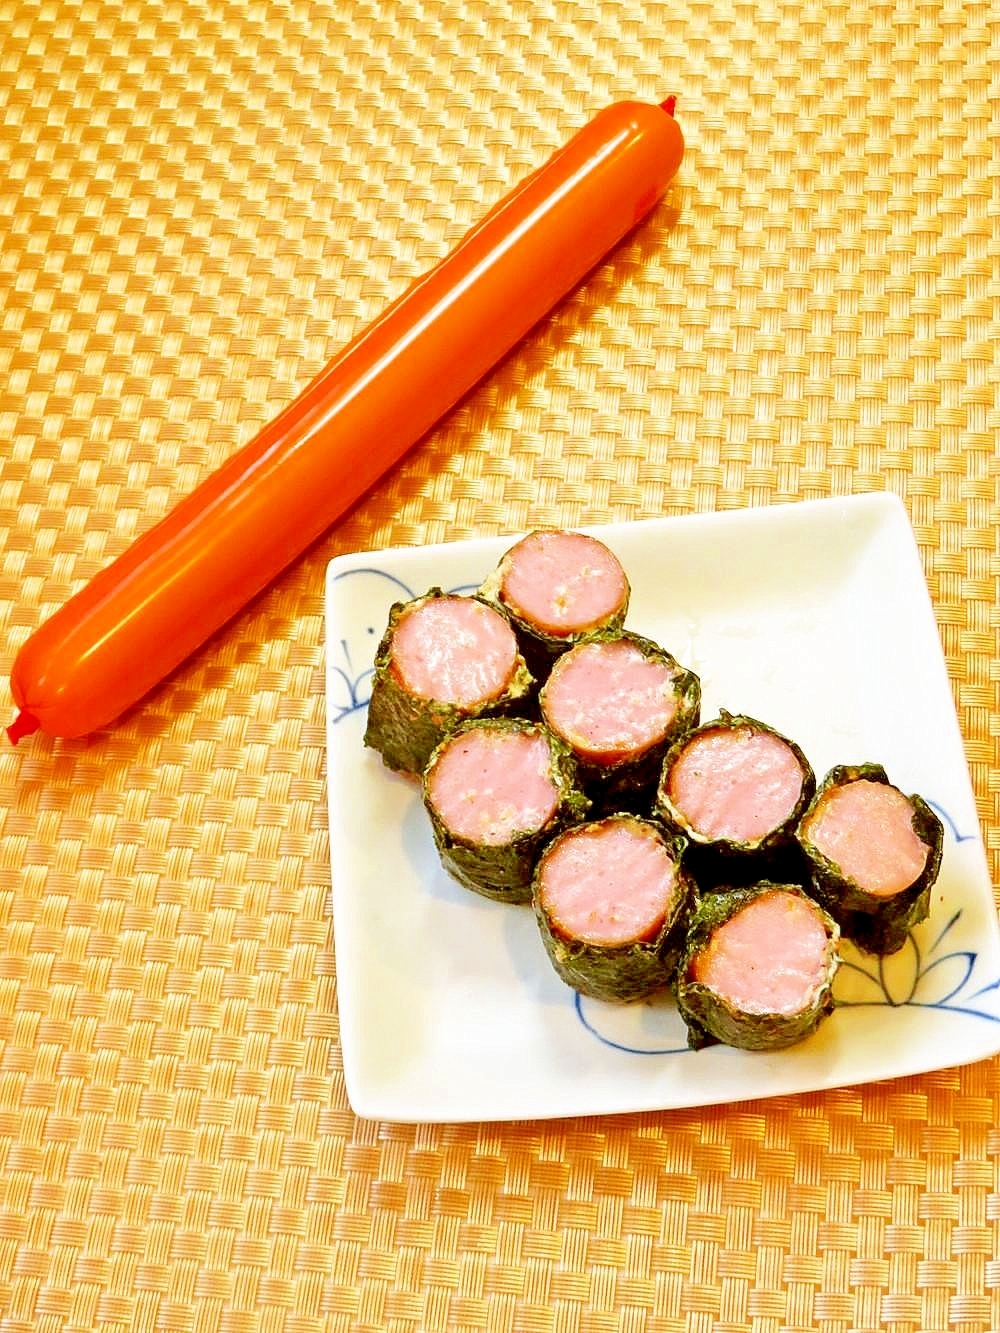 お弁当にも 簡単おかず のり巻き魚肉ソーセージ レシピ 作り方 By Hirokoh ひろこぉ 楽天レシピ